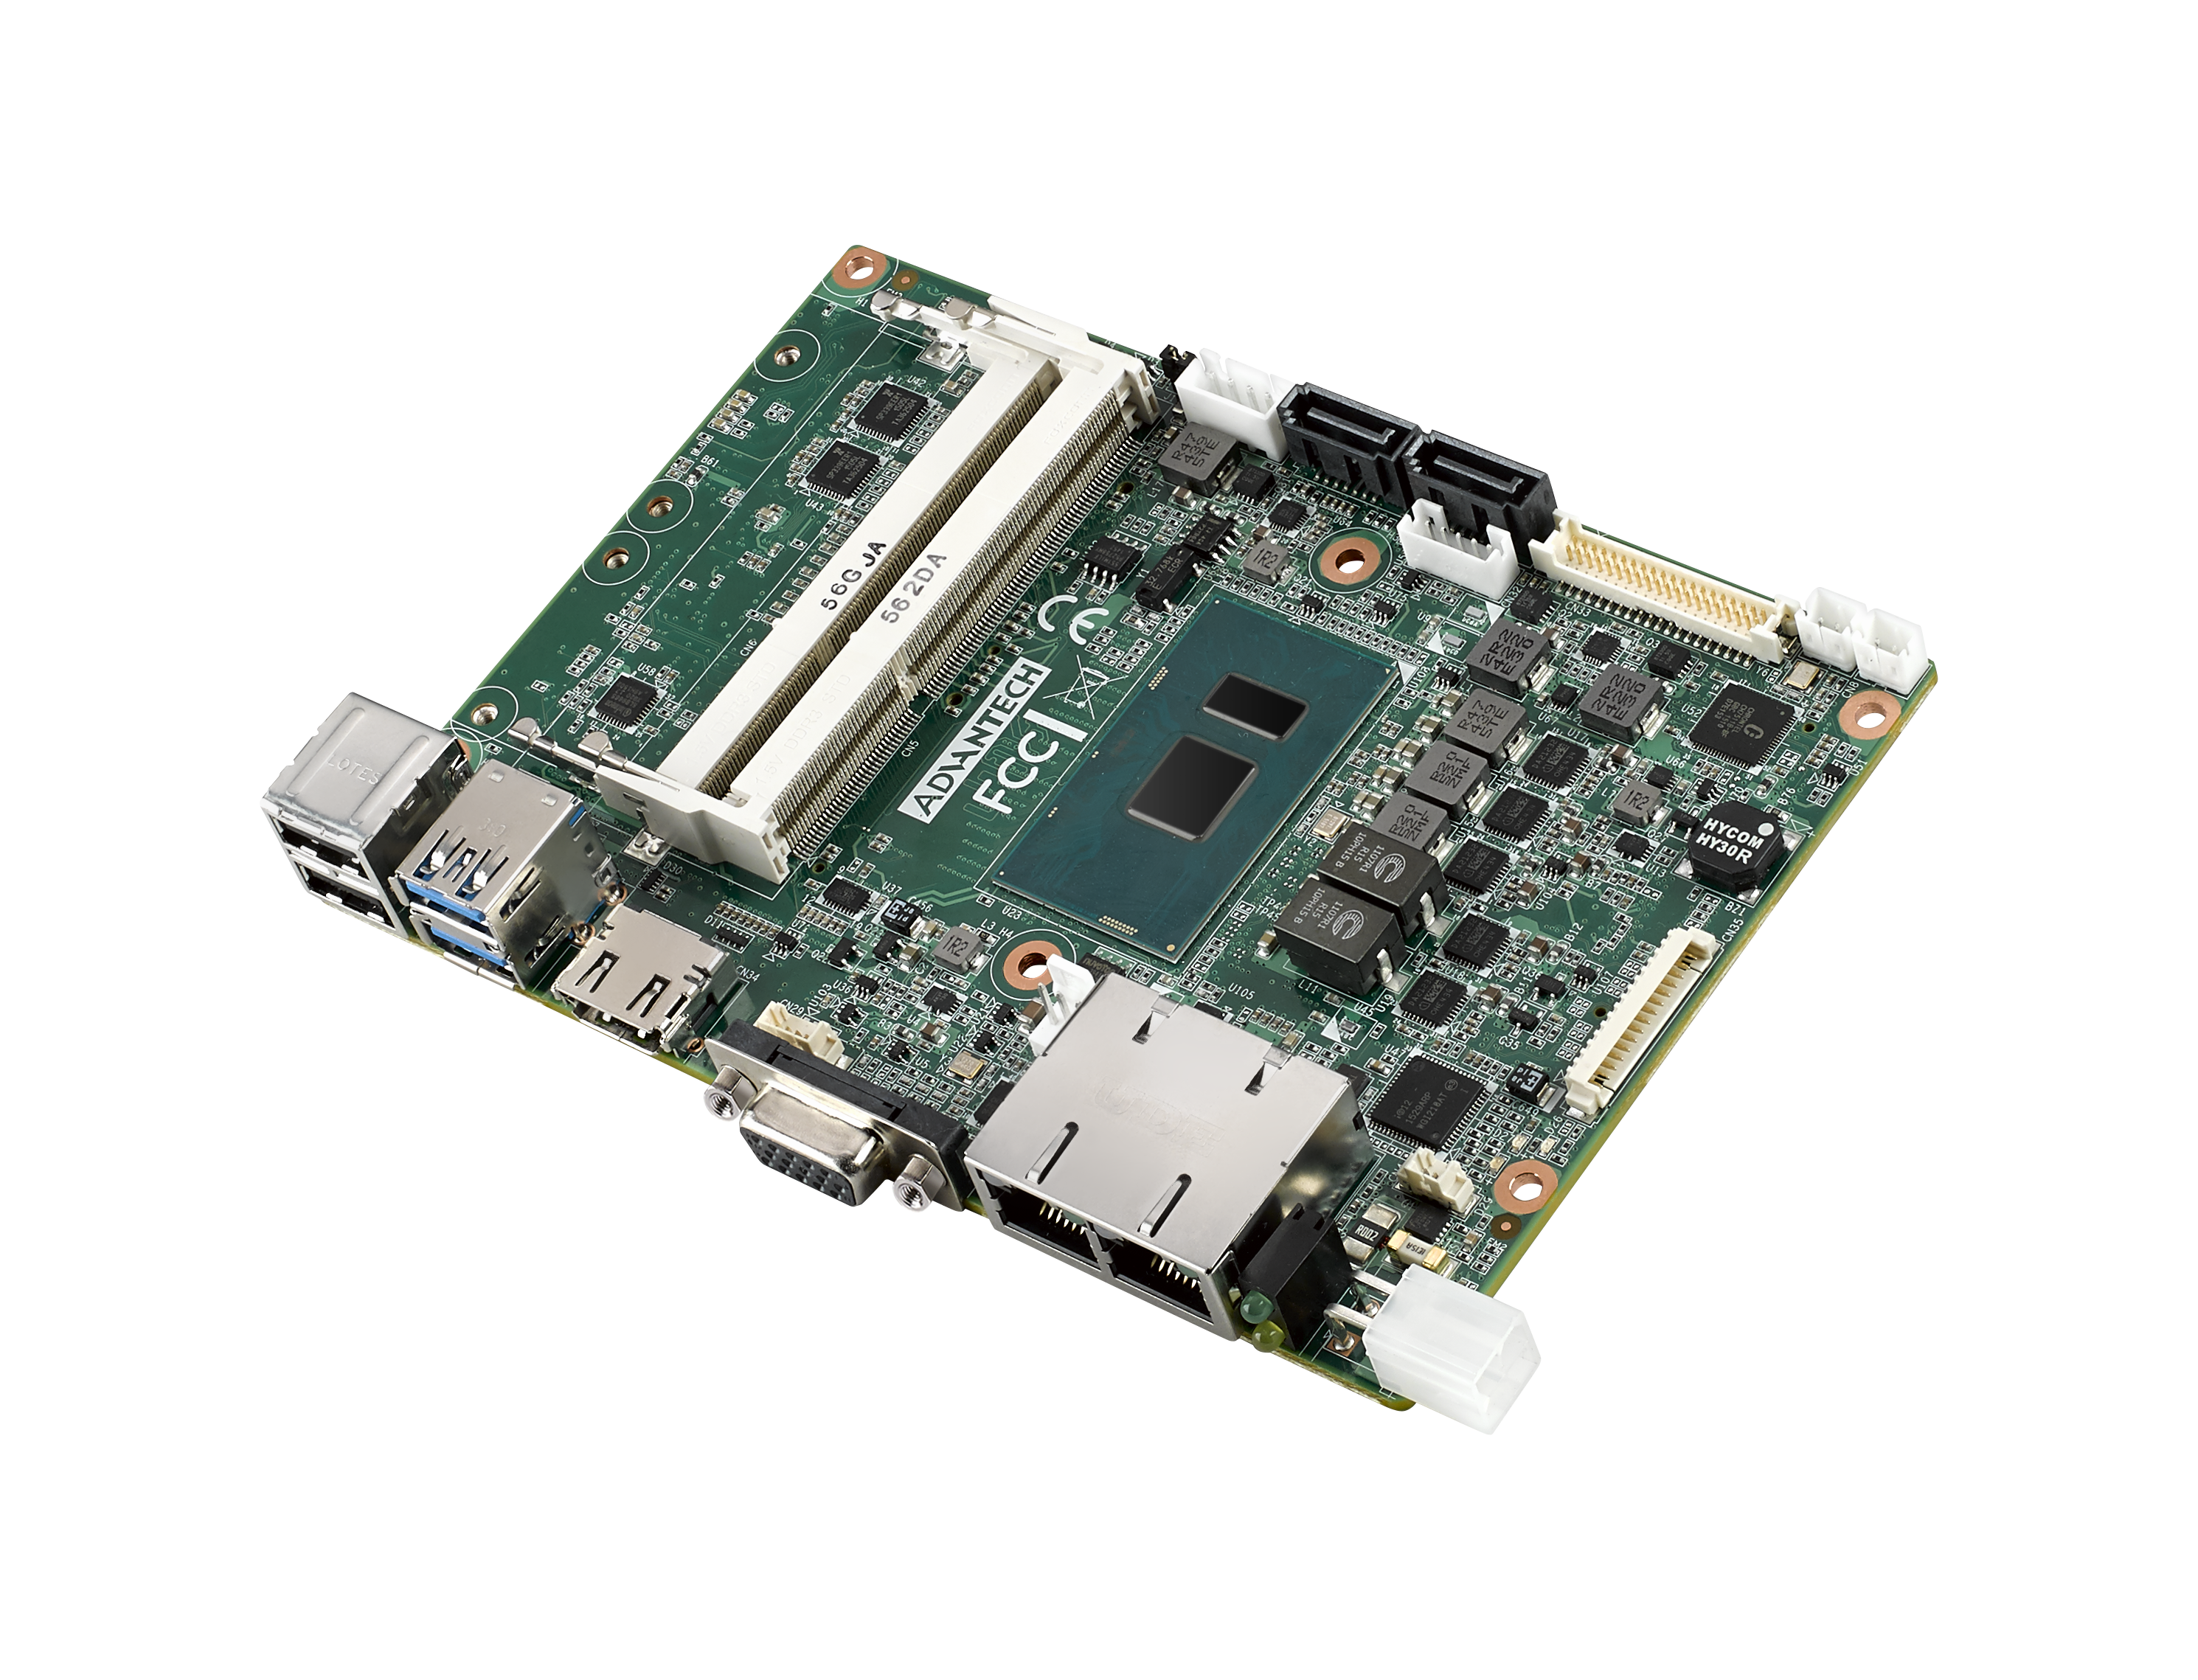 6th Gen i5 6300U 3.5” Compact SBC with DDR3L, VGA, HDMI, 48-bit LVDS, 2 GbE, 
2 Mini PCIe, mSATA, Fanless, MIOe